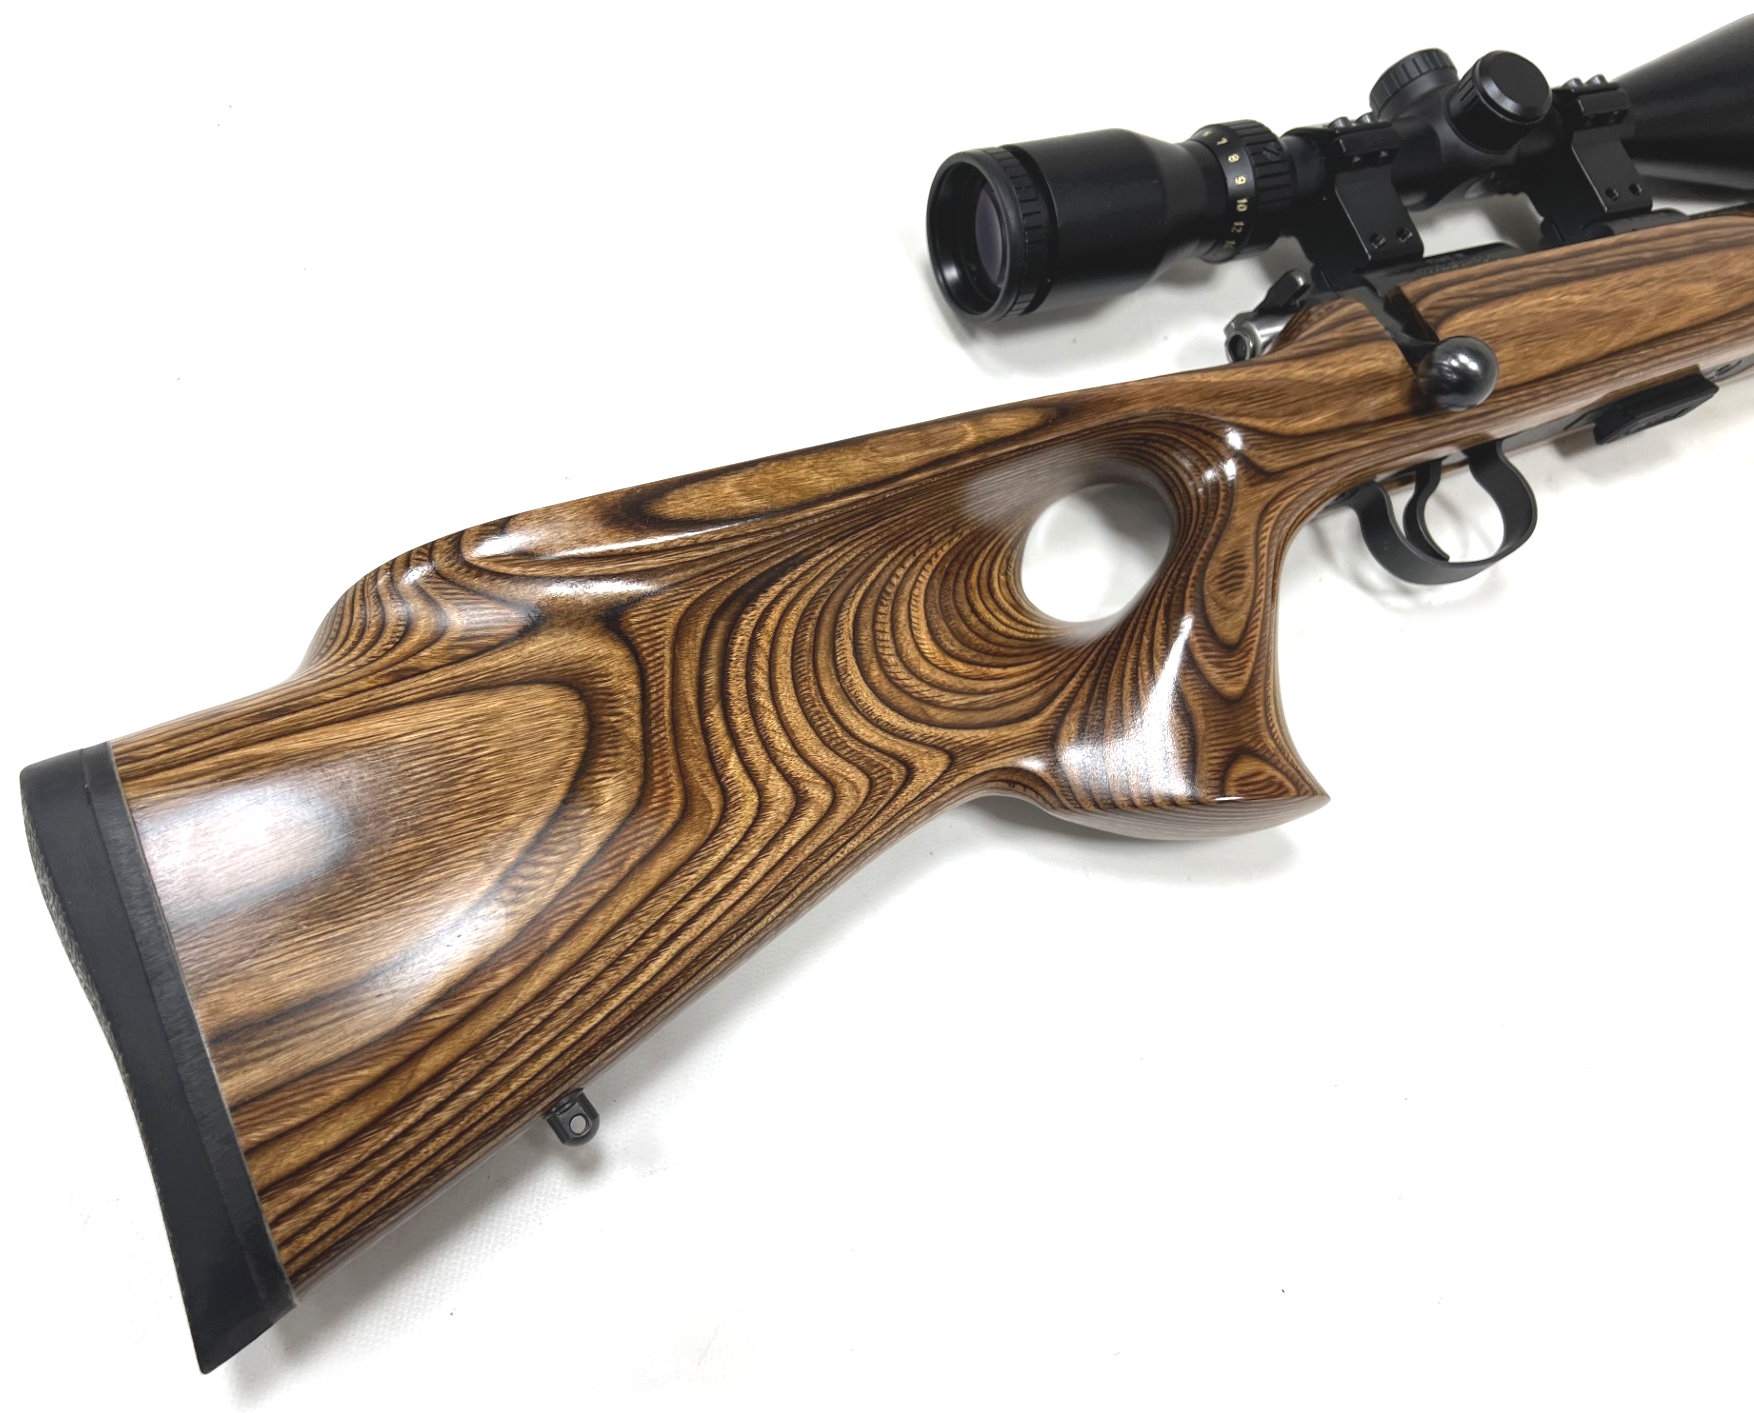 cz 455 thumbhole .22 lr rifle with scope used